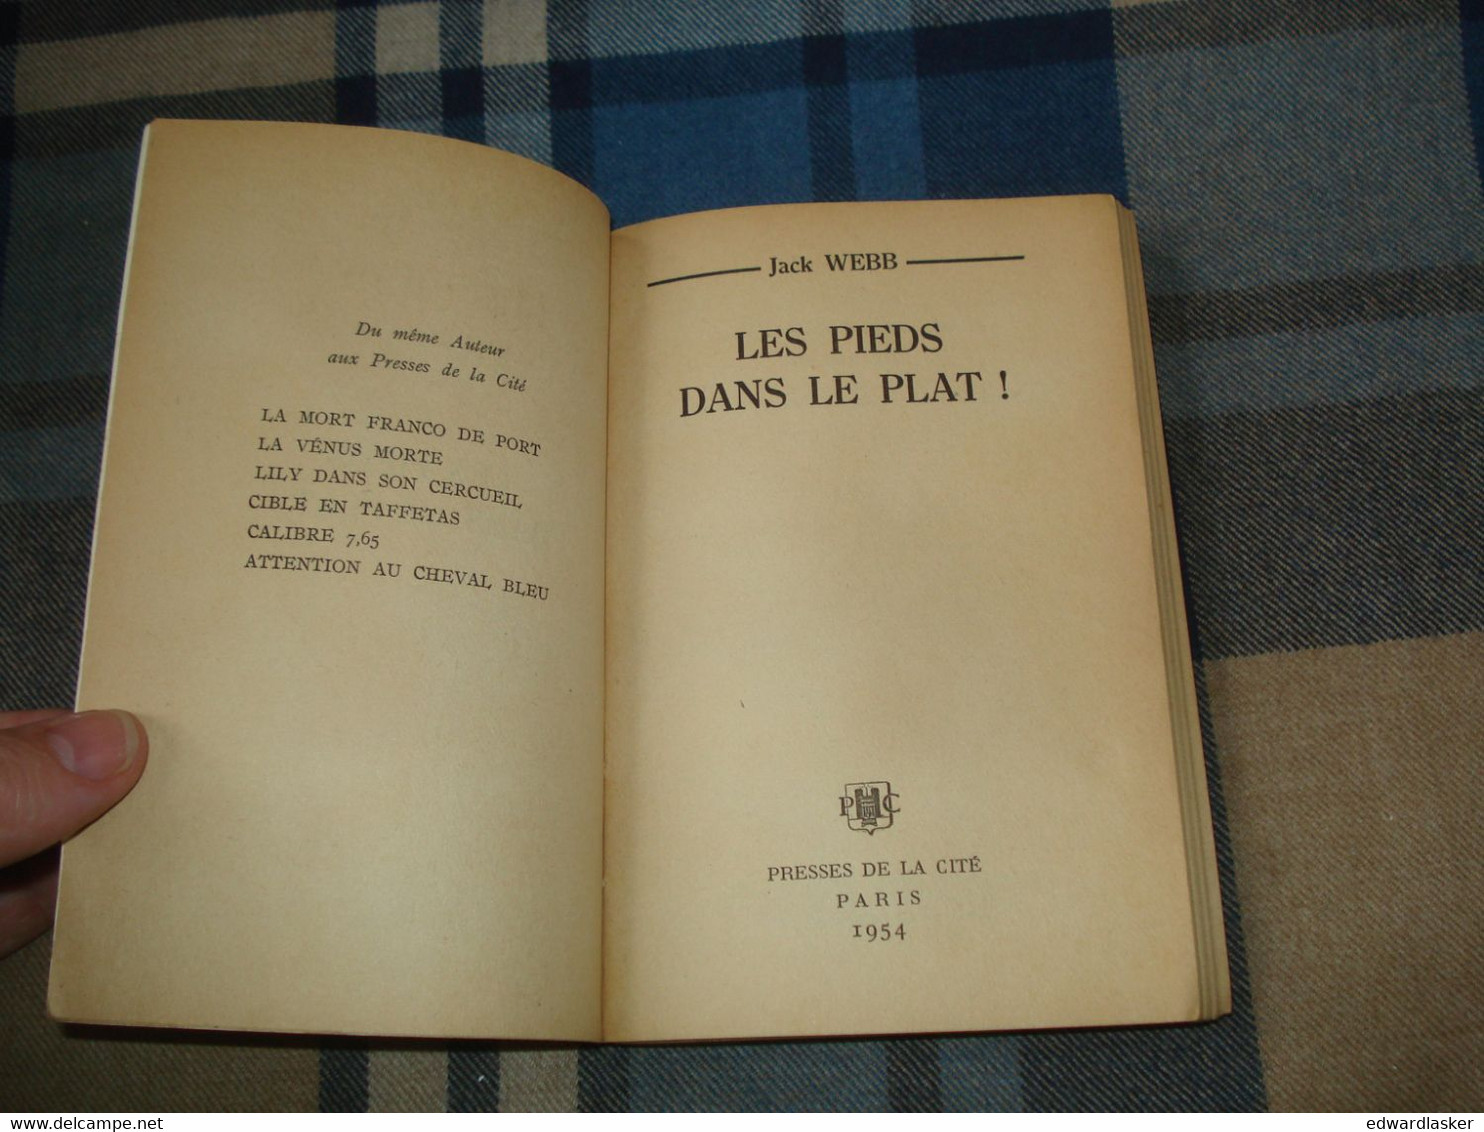 Un MYSTERE N°185 : Les PIEDS Dans Le PLAT /Jack Webb - Octobre 1954 - BE [2] - Presses De La Cité